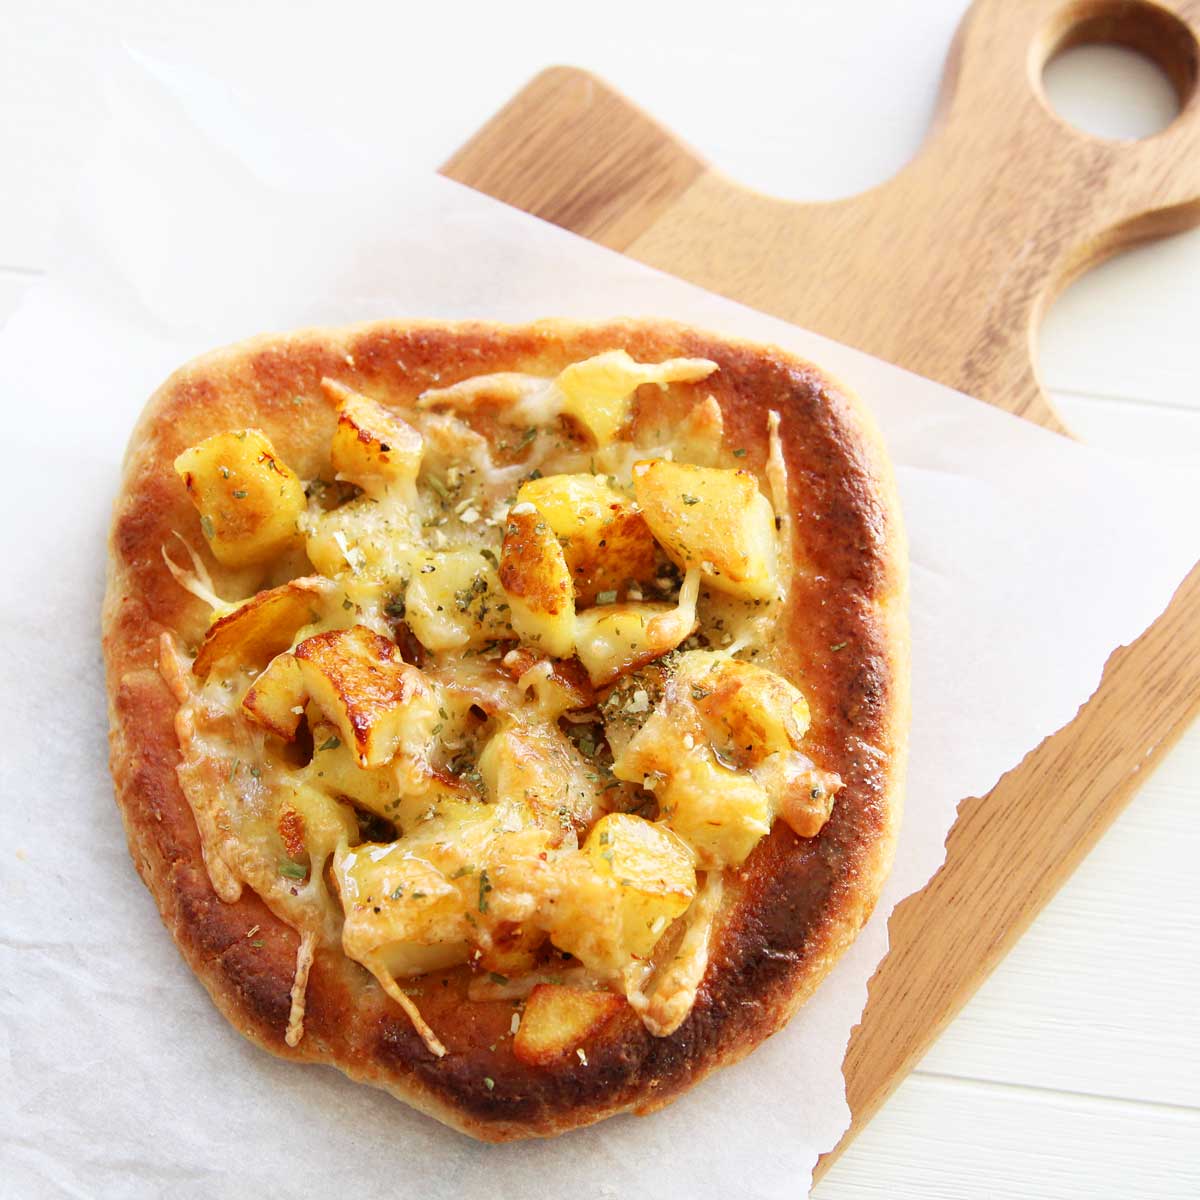 pizza naan ideas and recipes - saffron potatoes